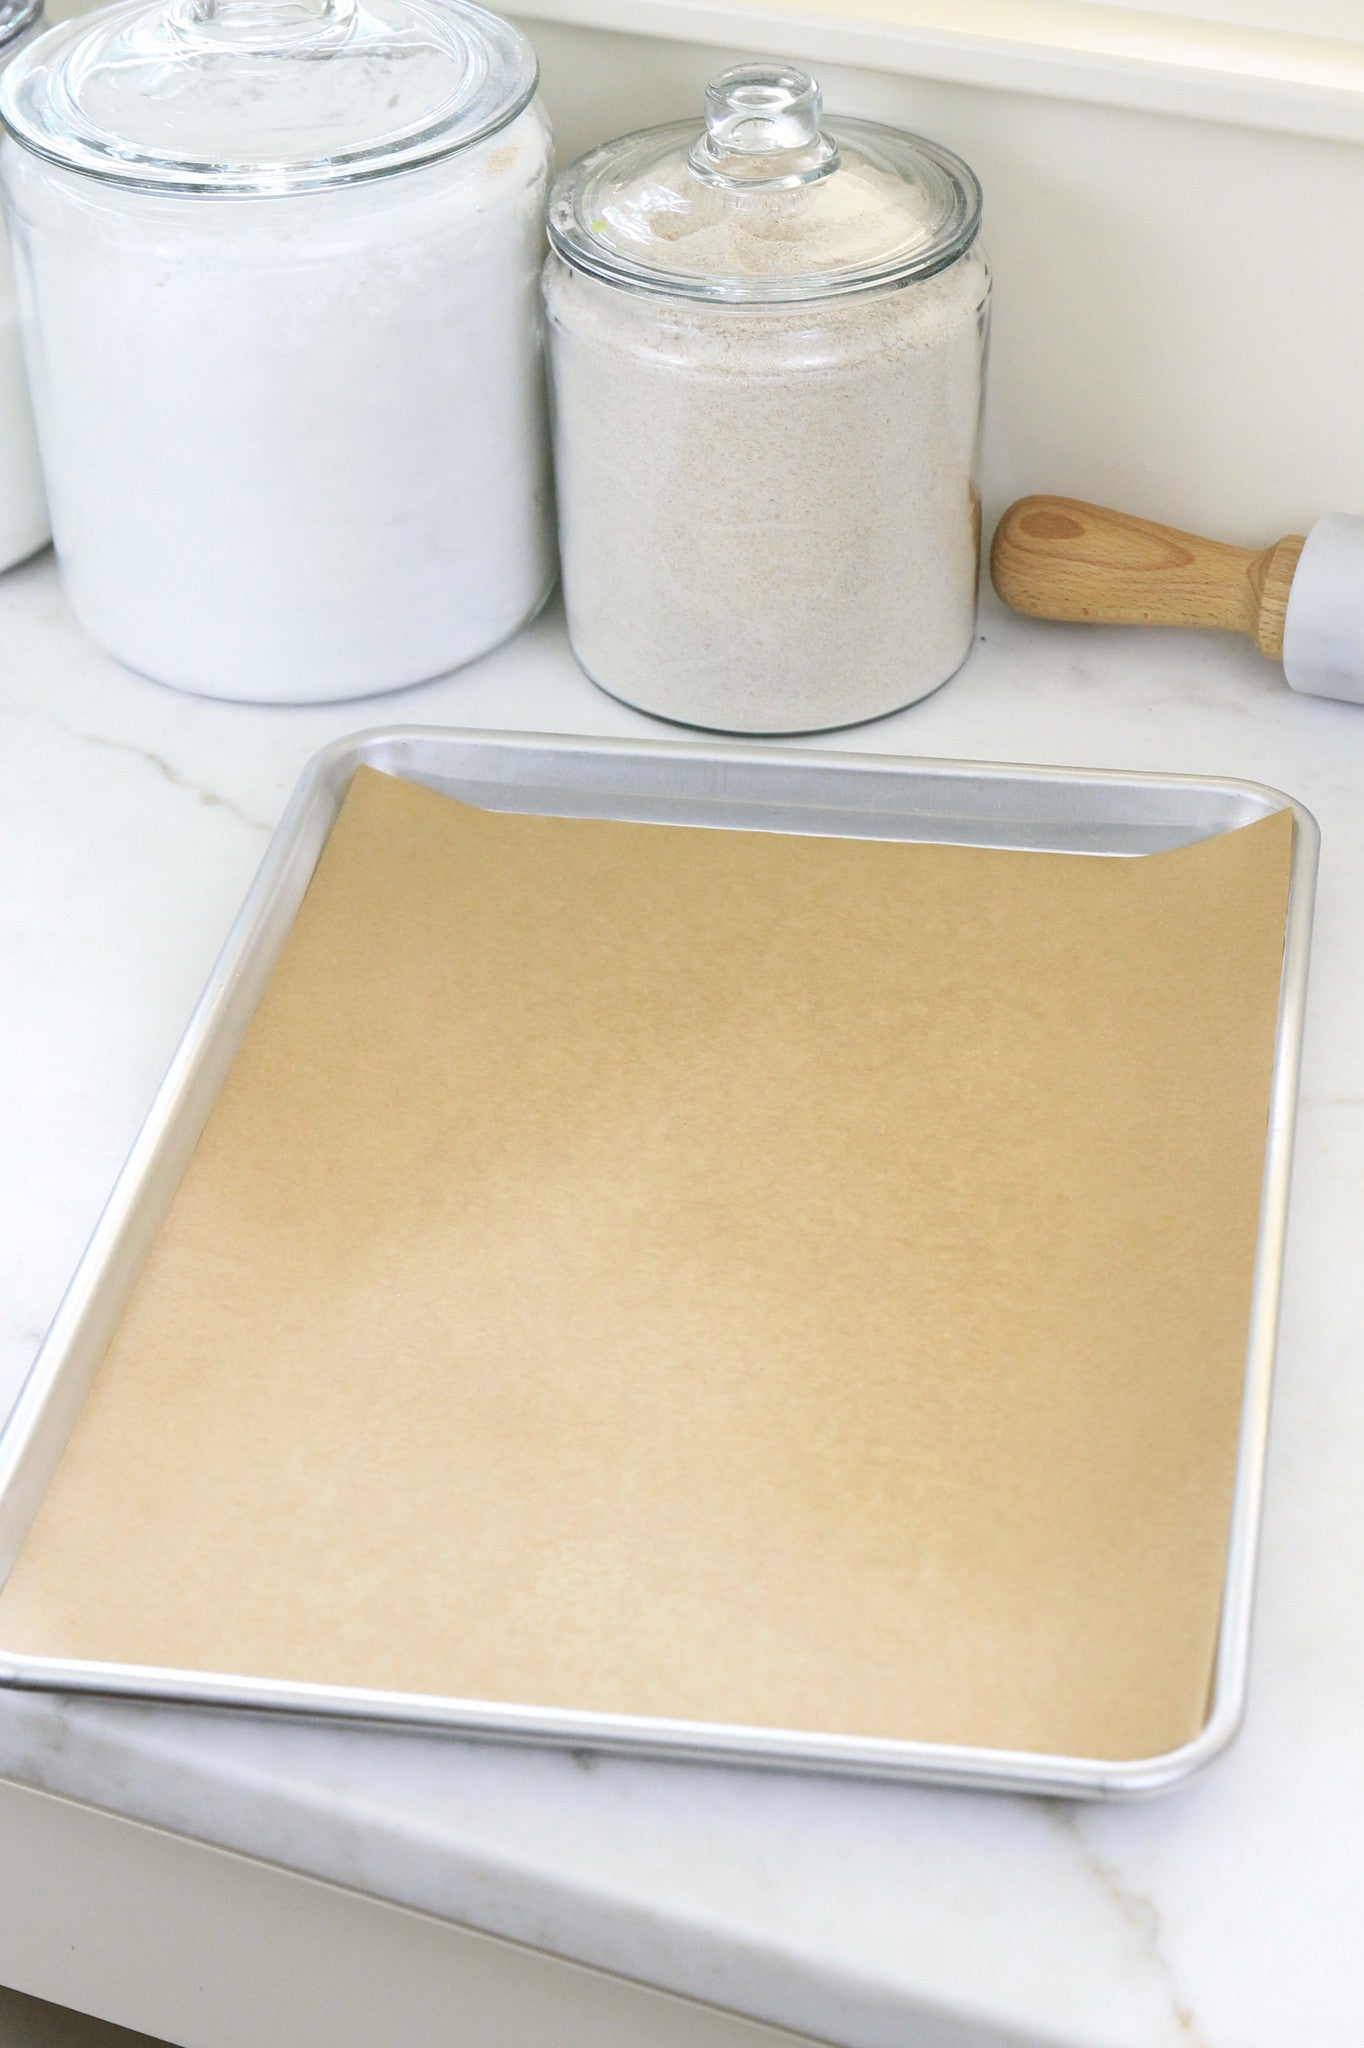 Parchment Paper Baking Sheets